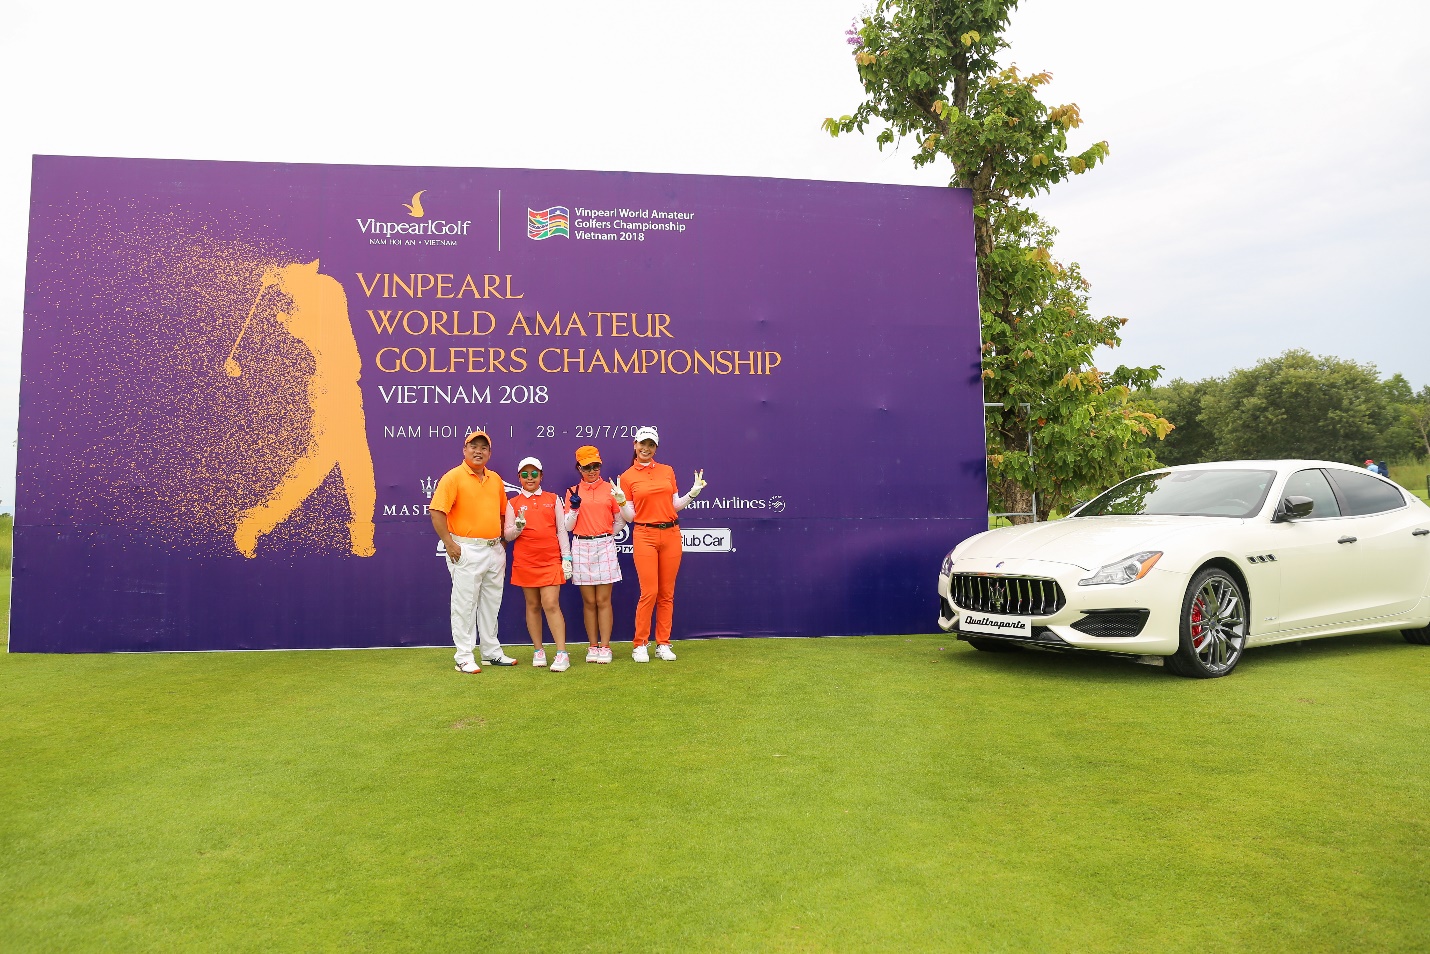 các gôn thủ có tiếng đã có mặt tại sân Vinpearl Golf Nam Hội An để chuẩn bị tranh tài tại vòng đấu Việt Nam của giải WAGC (World Amateur Golfers Championship)